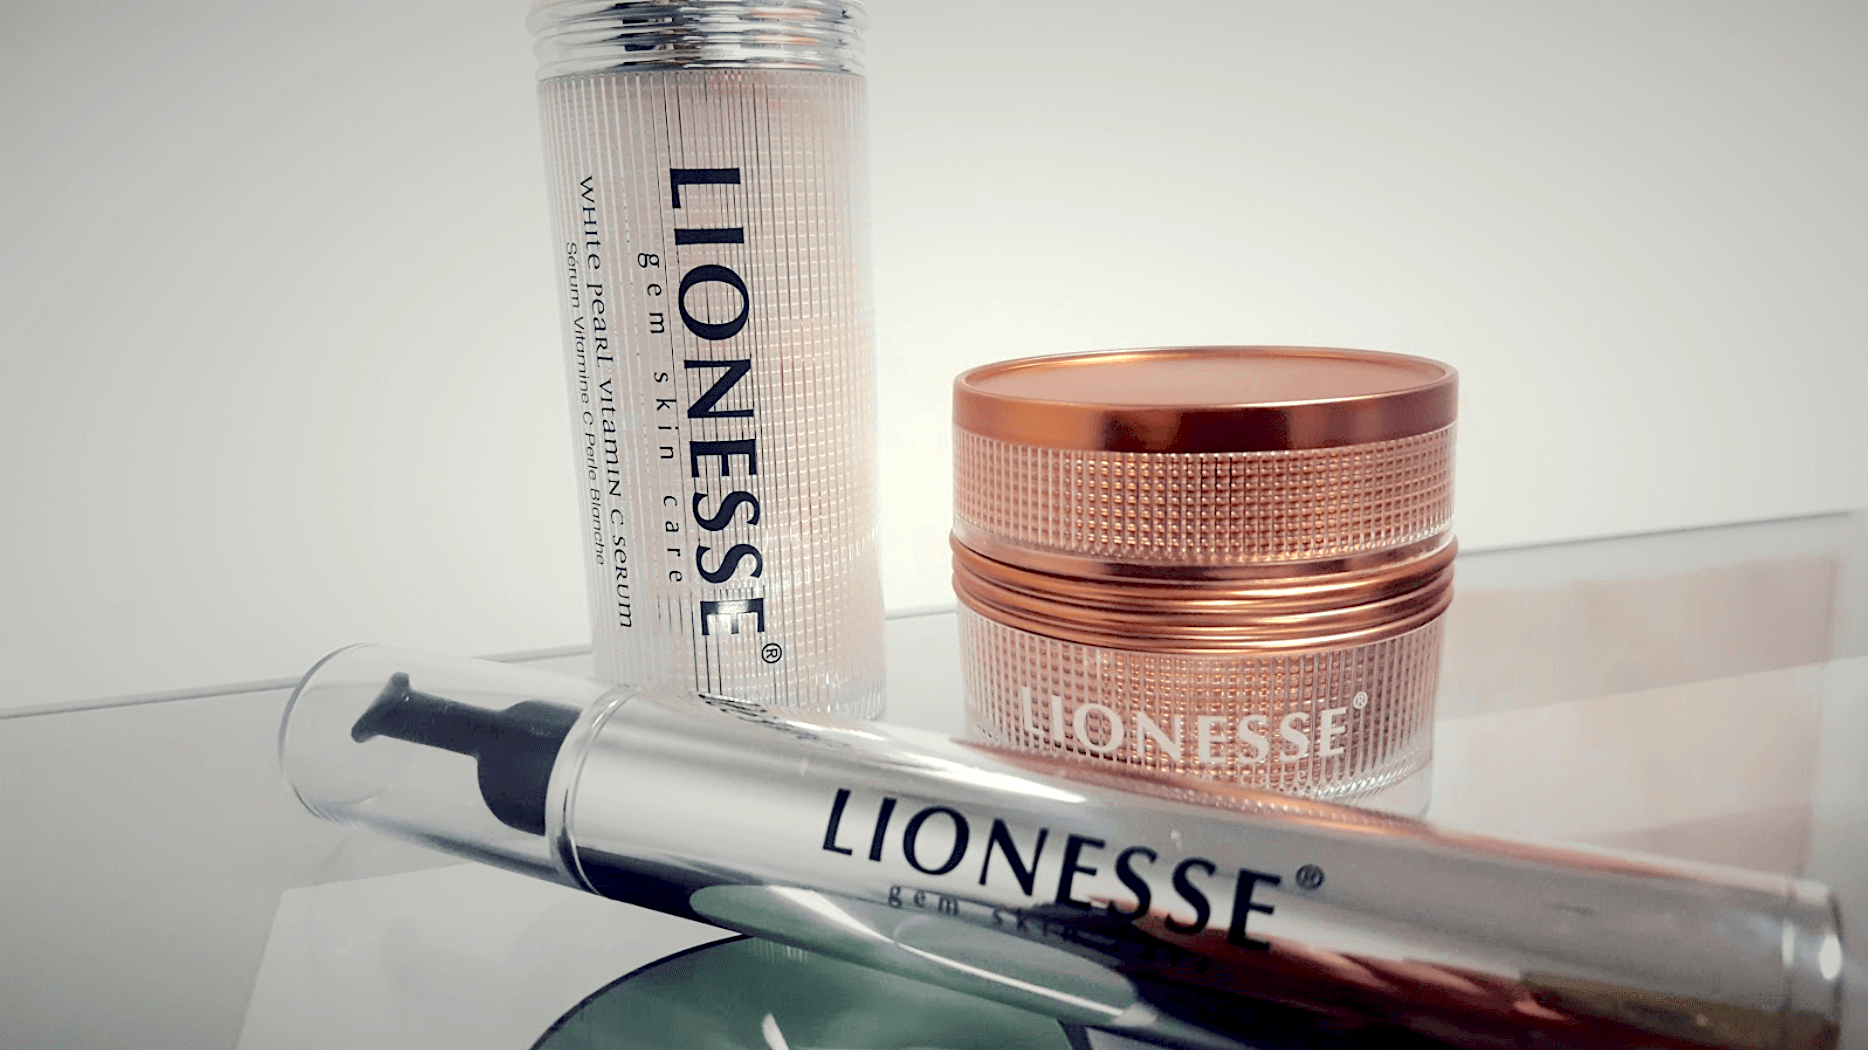 Lionesse Gem skincare review